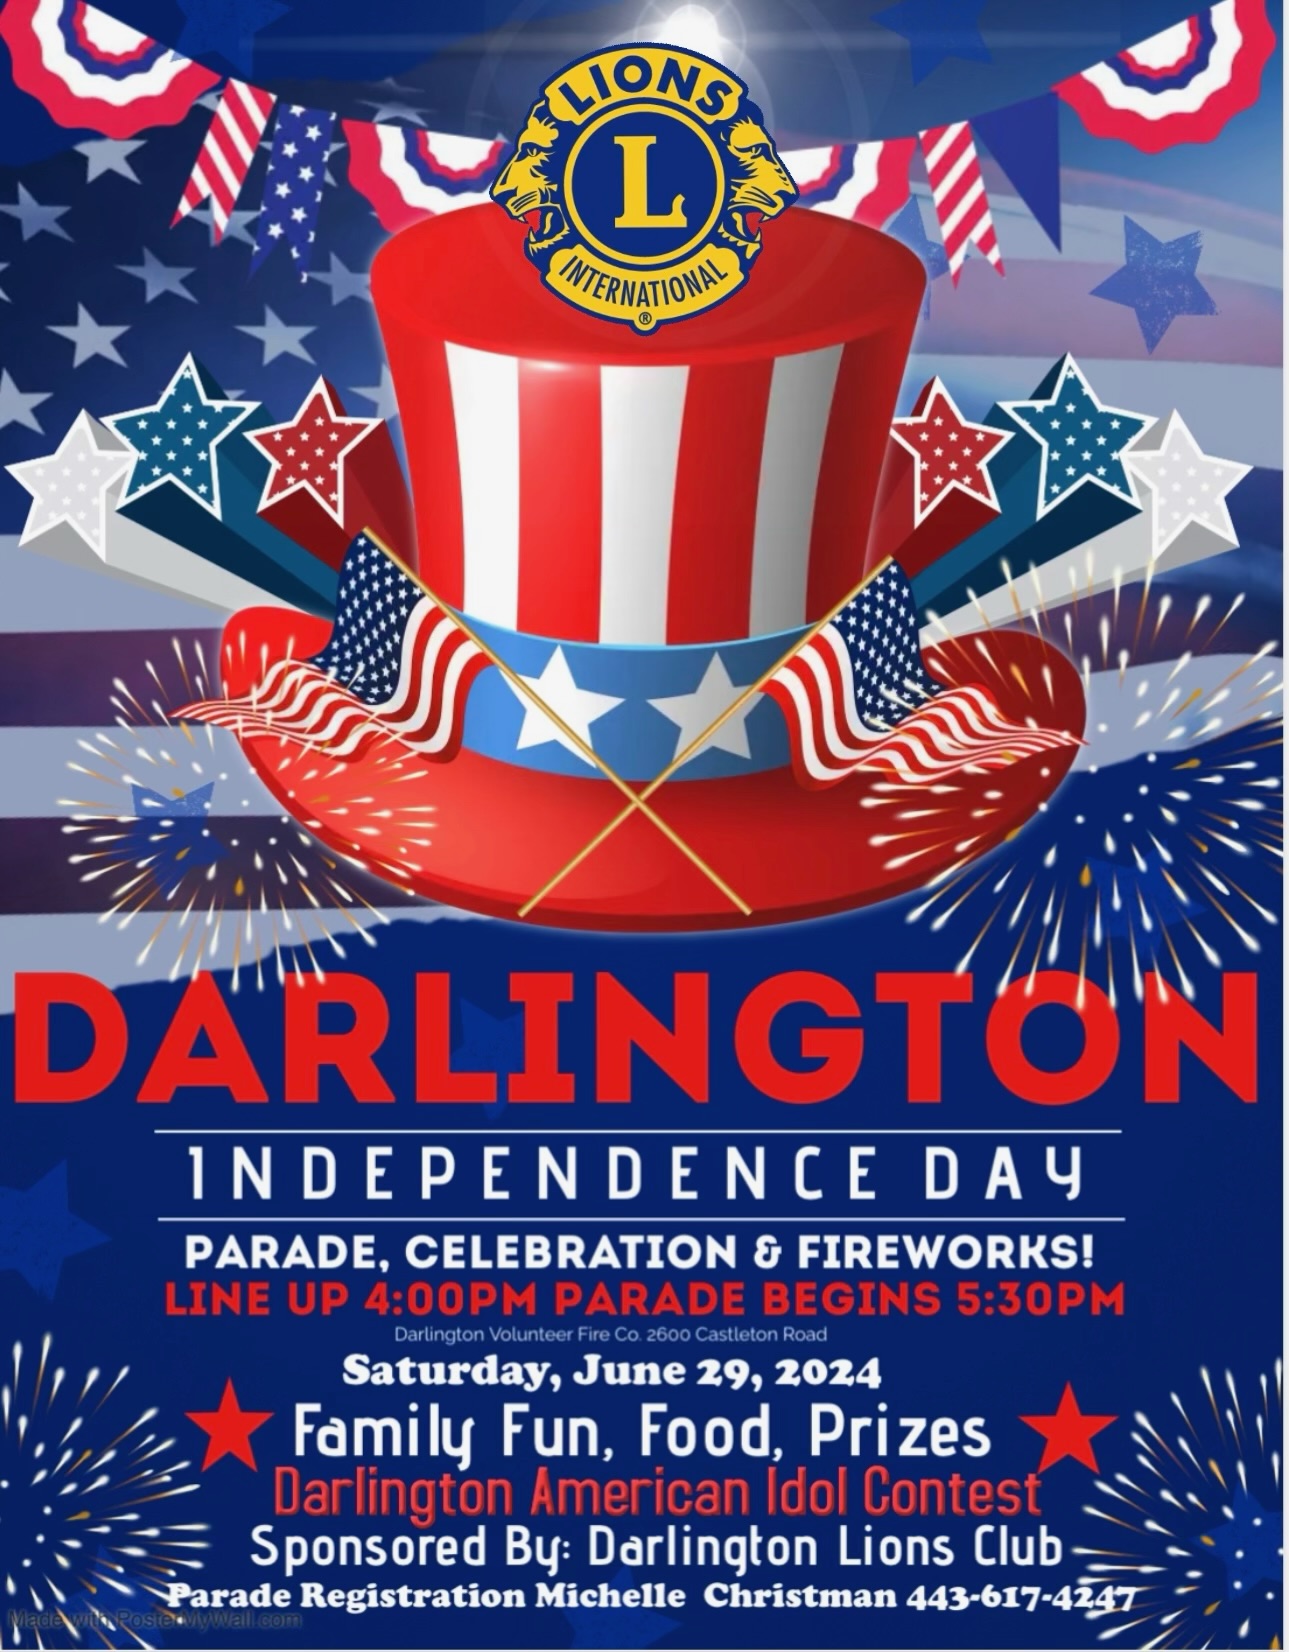 Darlington Independence Day Parade